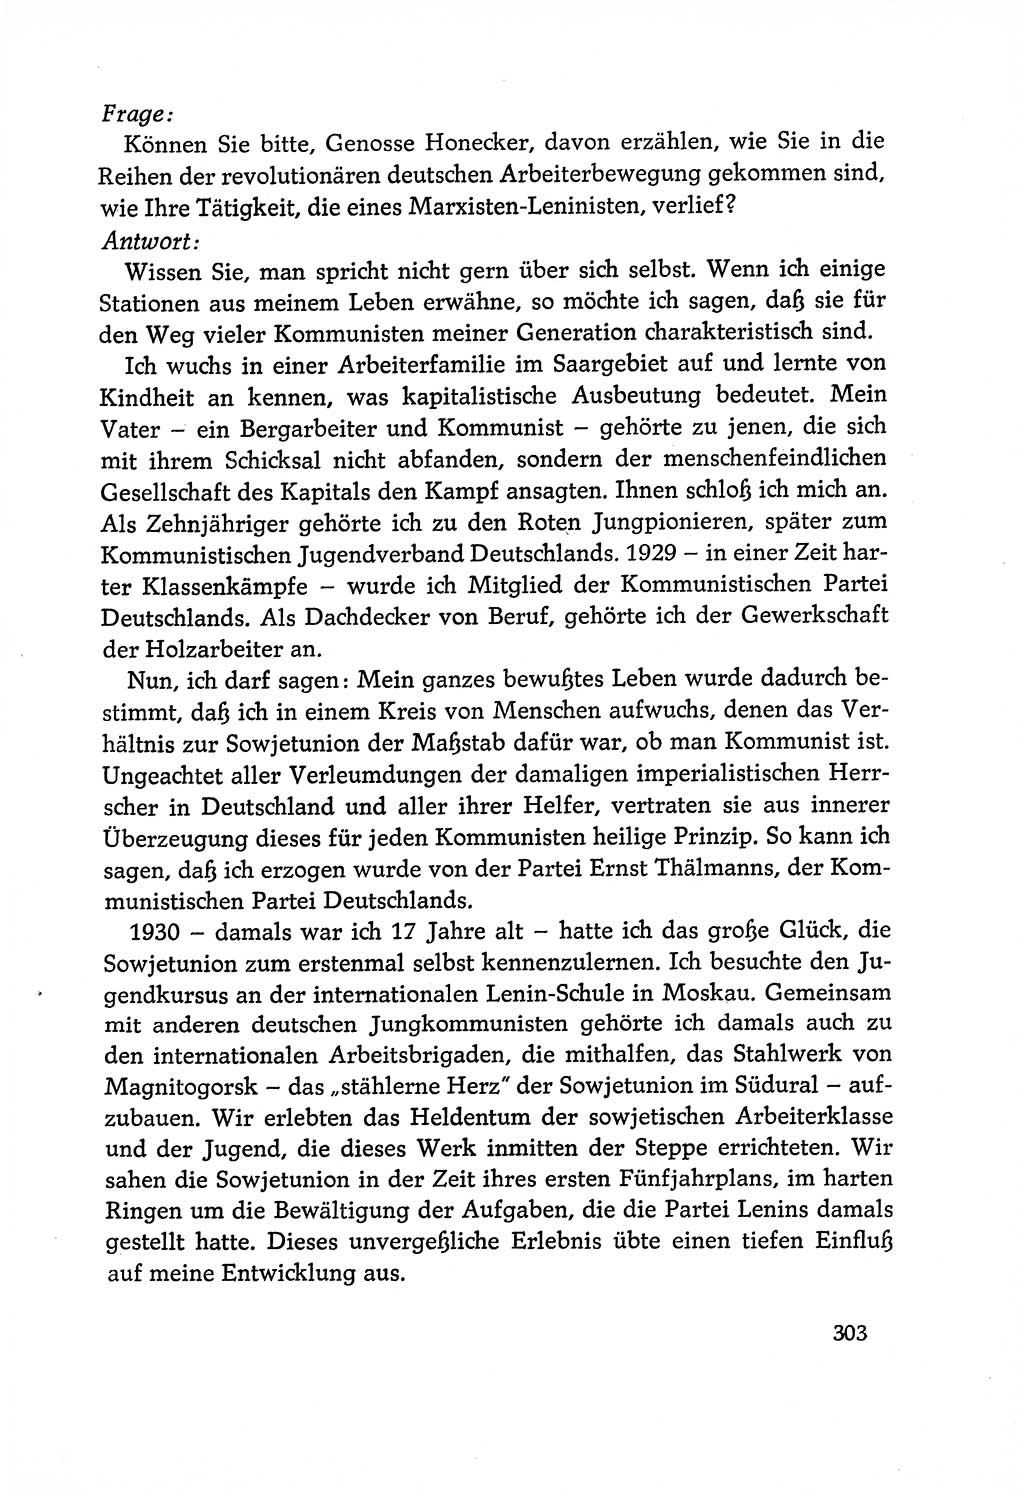 Dokumente der Sozialistischen Einheitspartei Deutschlands (SED) [Deutsche Demokratische Republik (DDR)] 1970-1971, Seite 303 (Dok. SED DDR 1970-1971, S. 303)